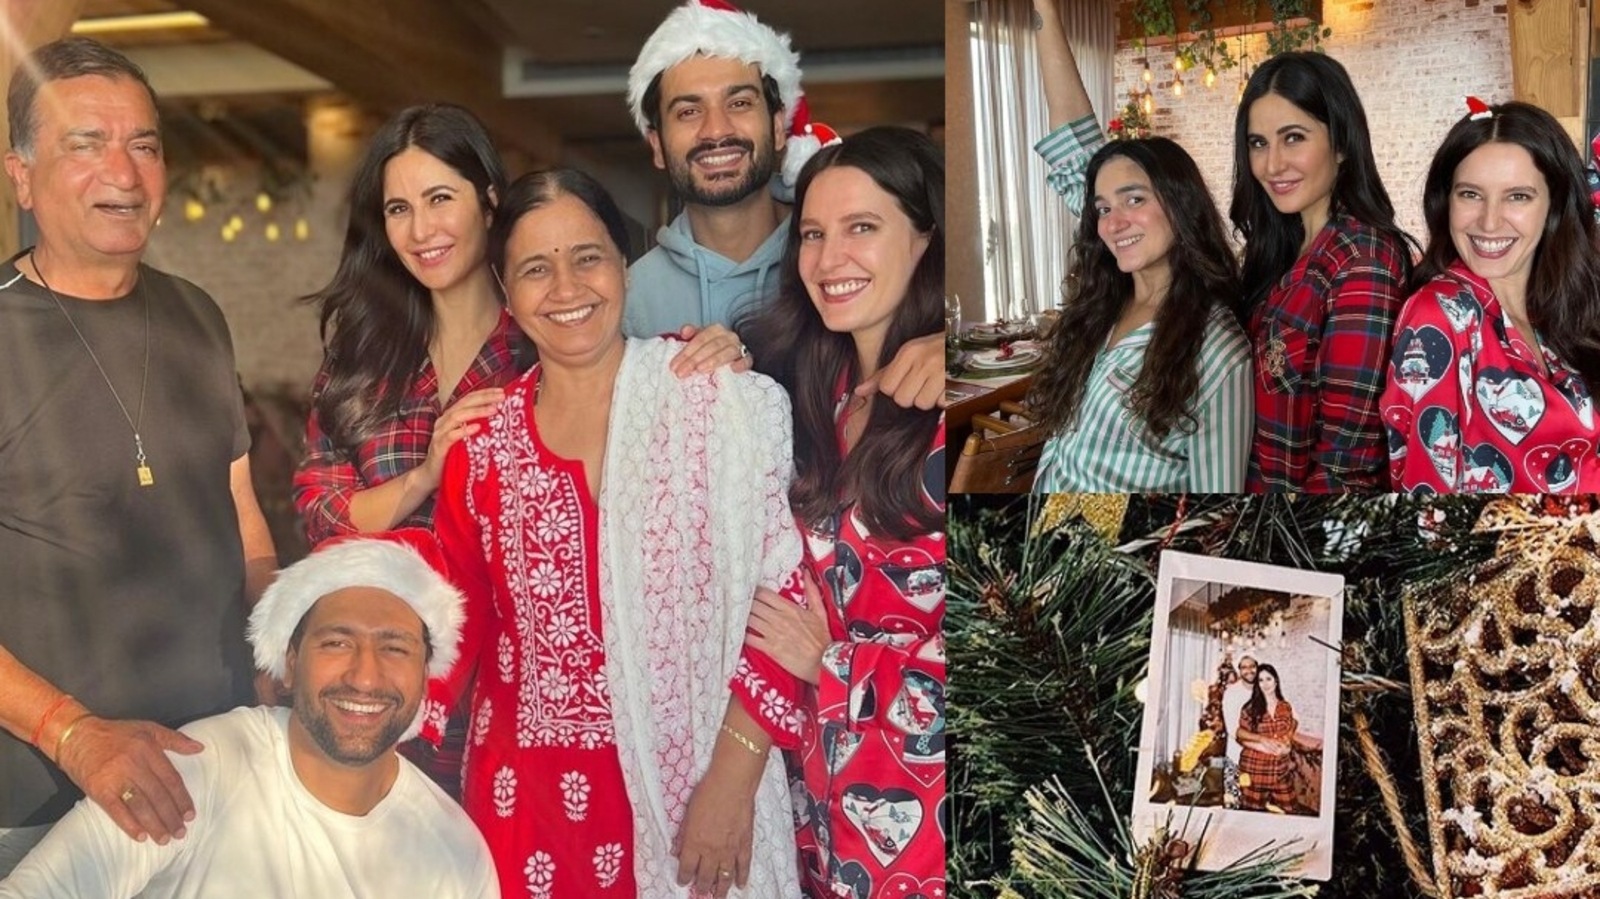 Katrina Kaif and Vicky Kaushal share pics of Christmas and family celebrations in pyjamas and Santa hats